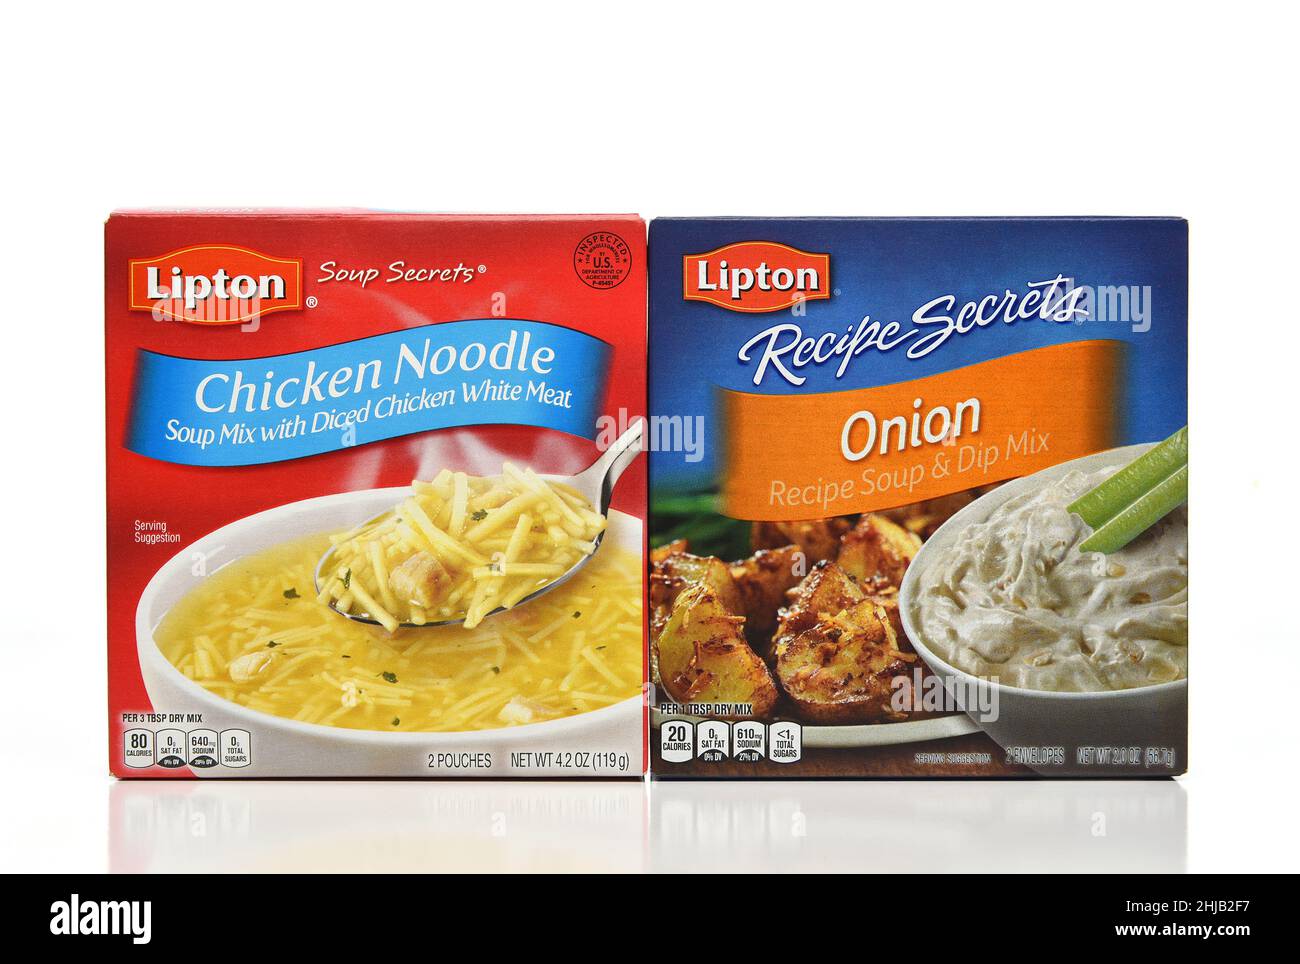 IRVINE, KALIFORNIEN - 27. JAN 2022: Eine Schachtel mit Lipton Chicken Noodle Soup Mix und Zwiebelsuppe und Dip Mix. Stockfoto